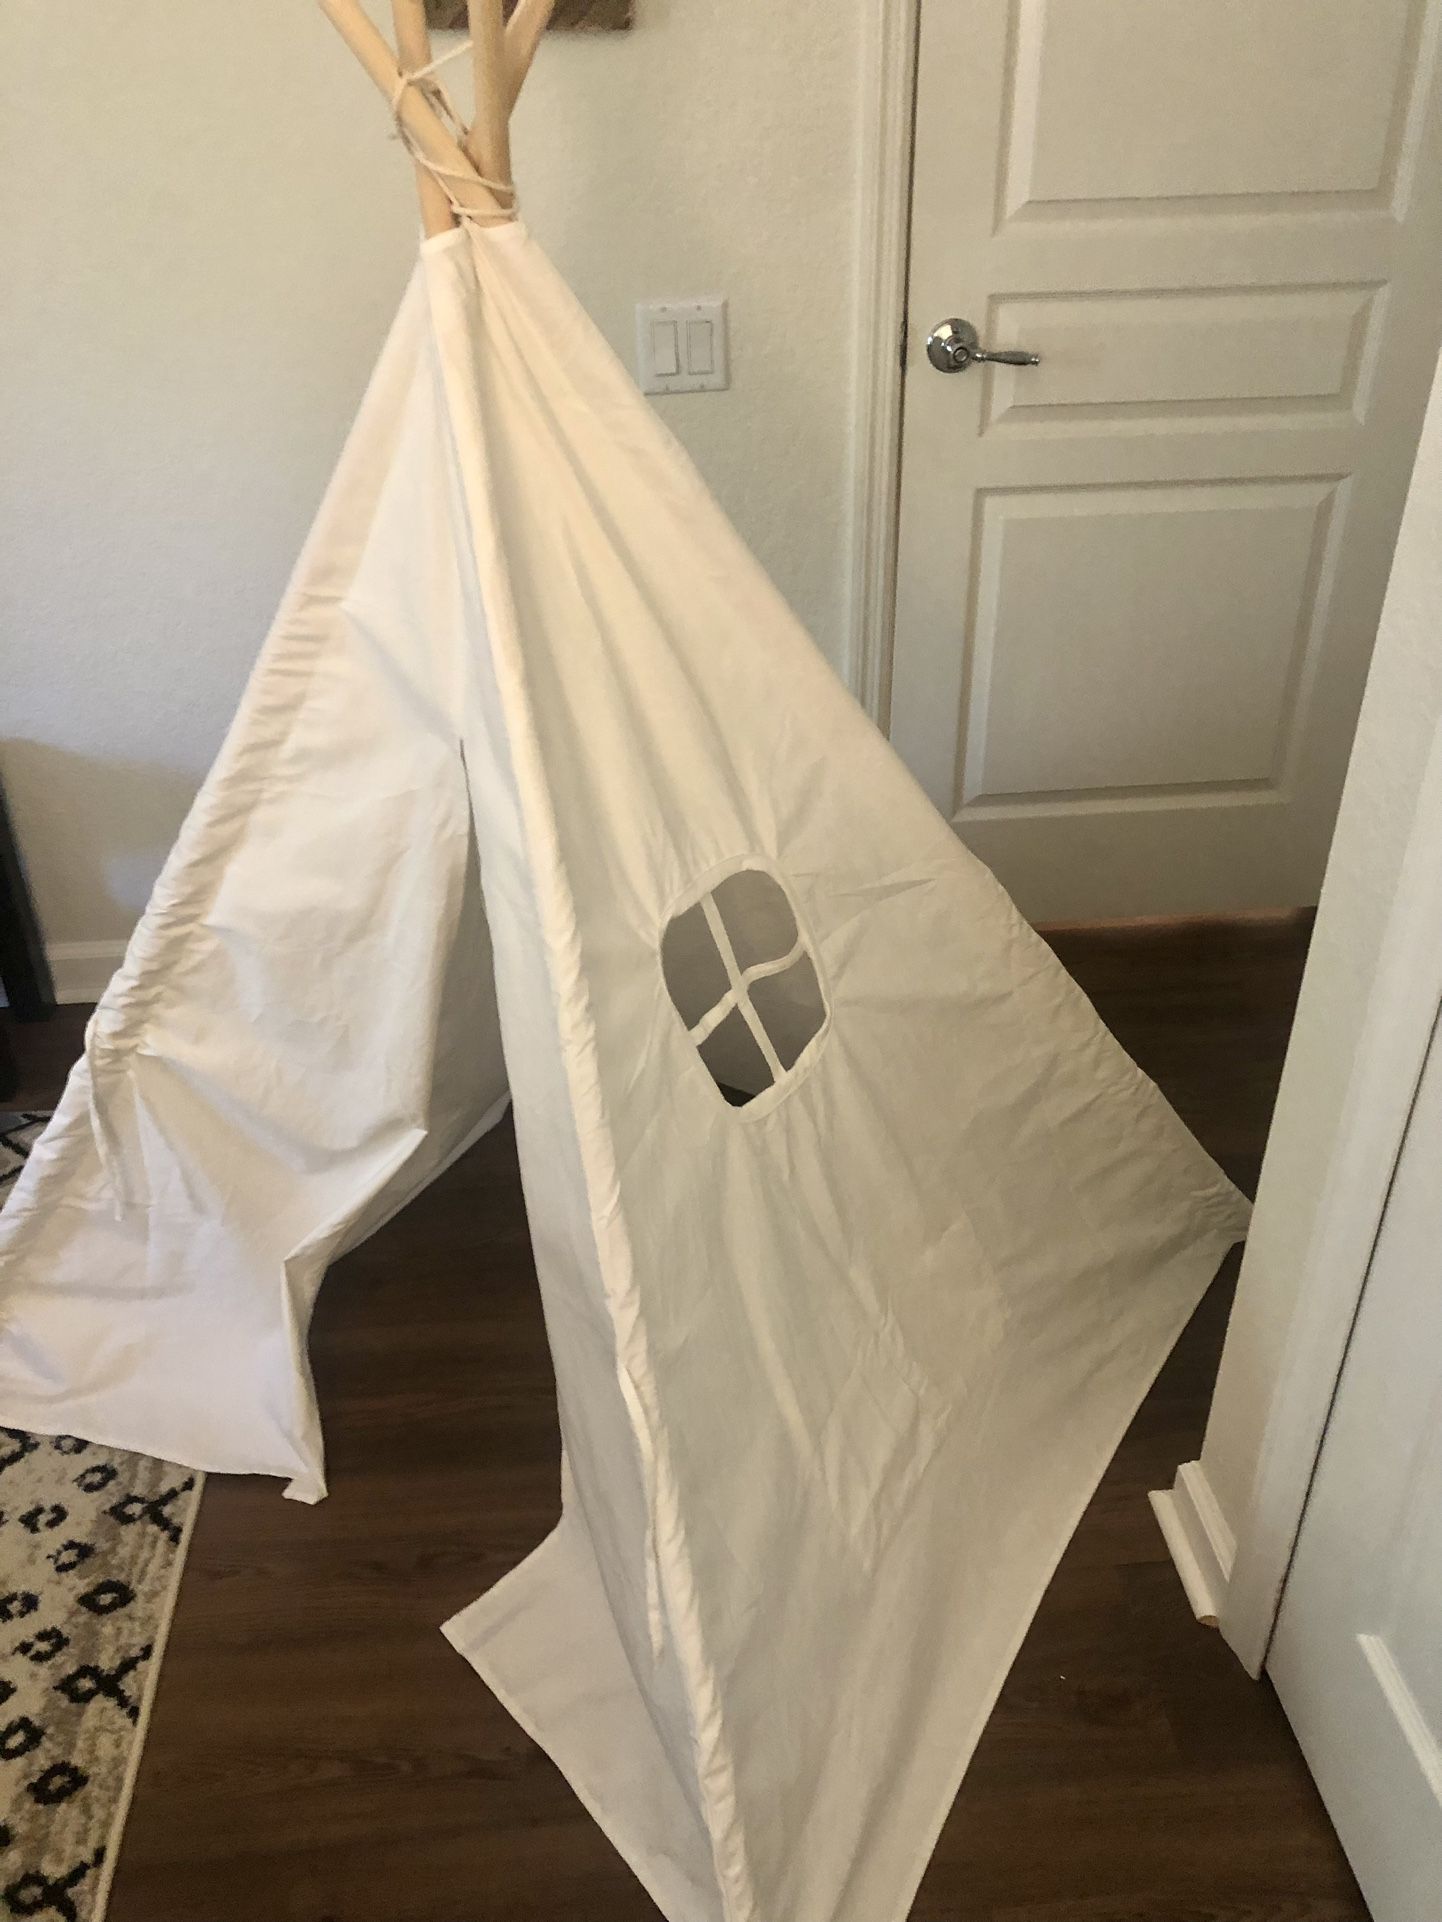 Kids White Cloth Play Tent Teepee 